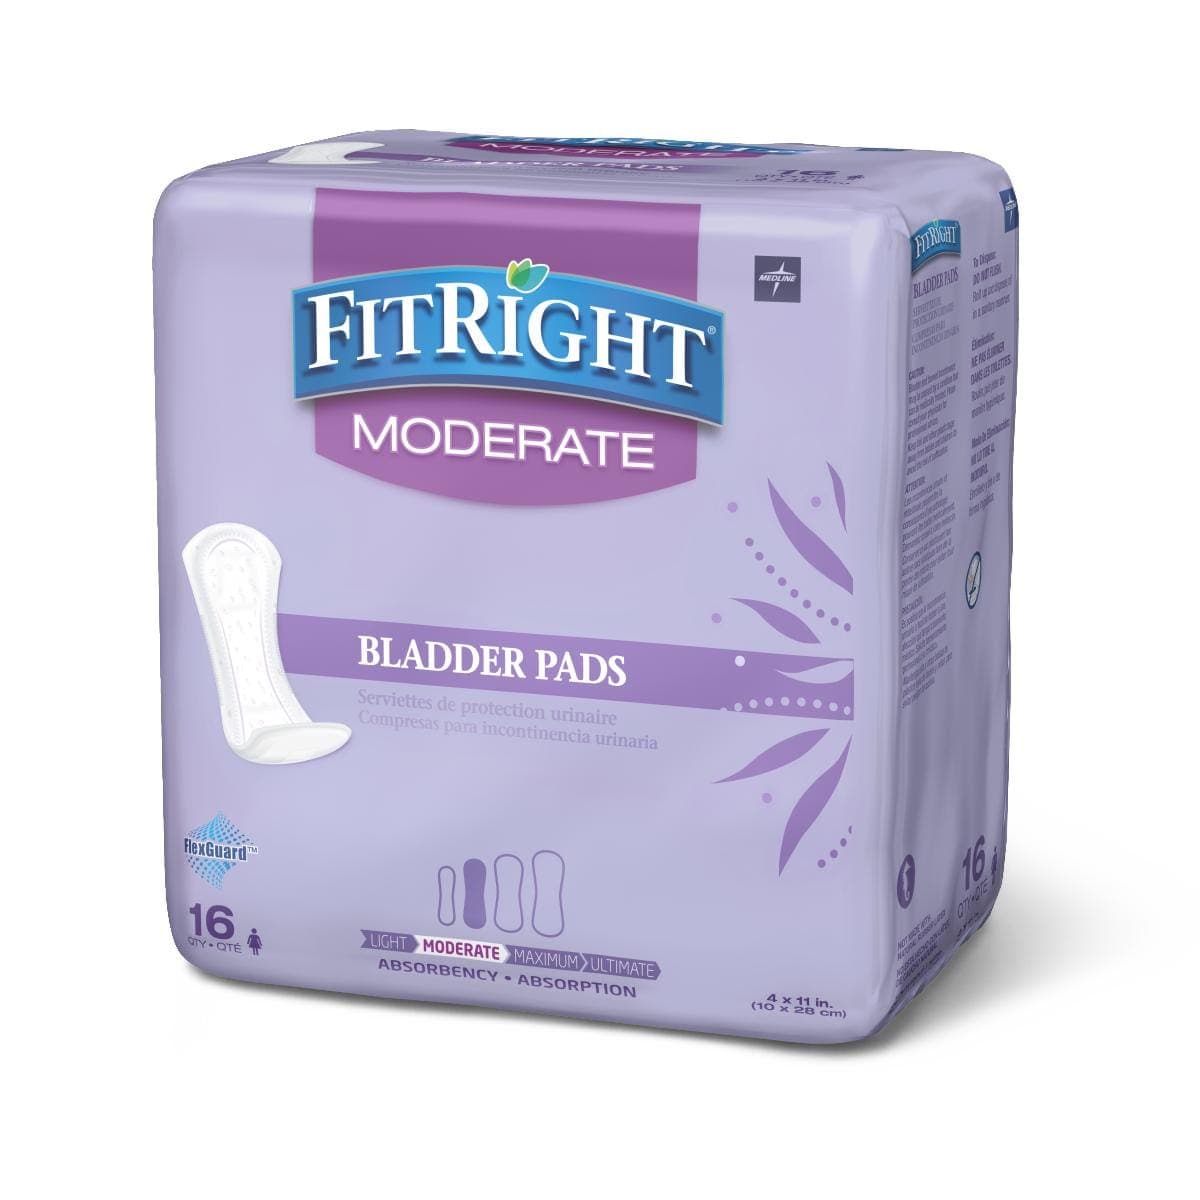 Medline Moderate / Bag of 16 Medline FitRight Bladder Control Pads